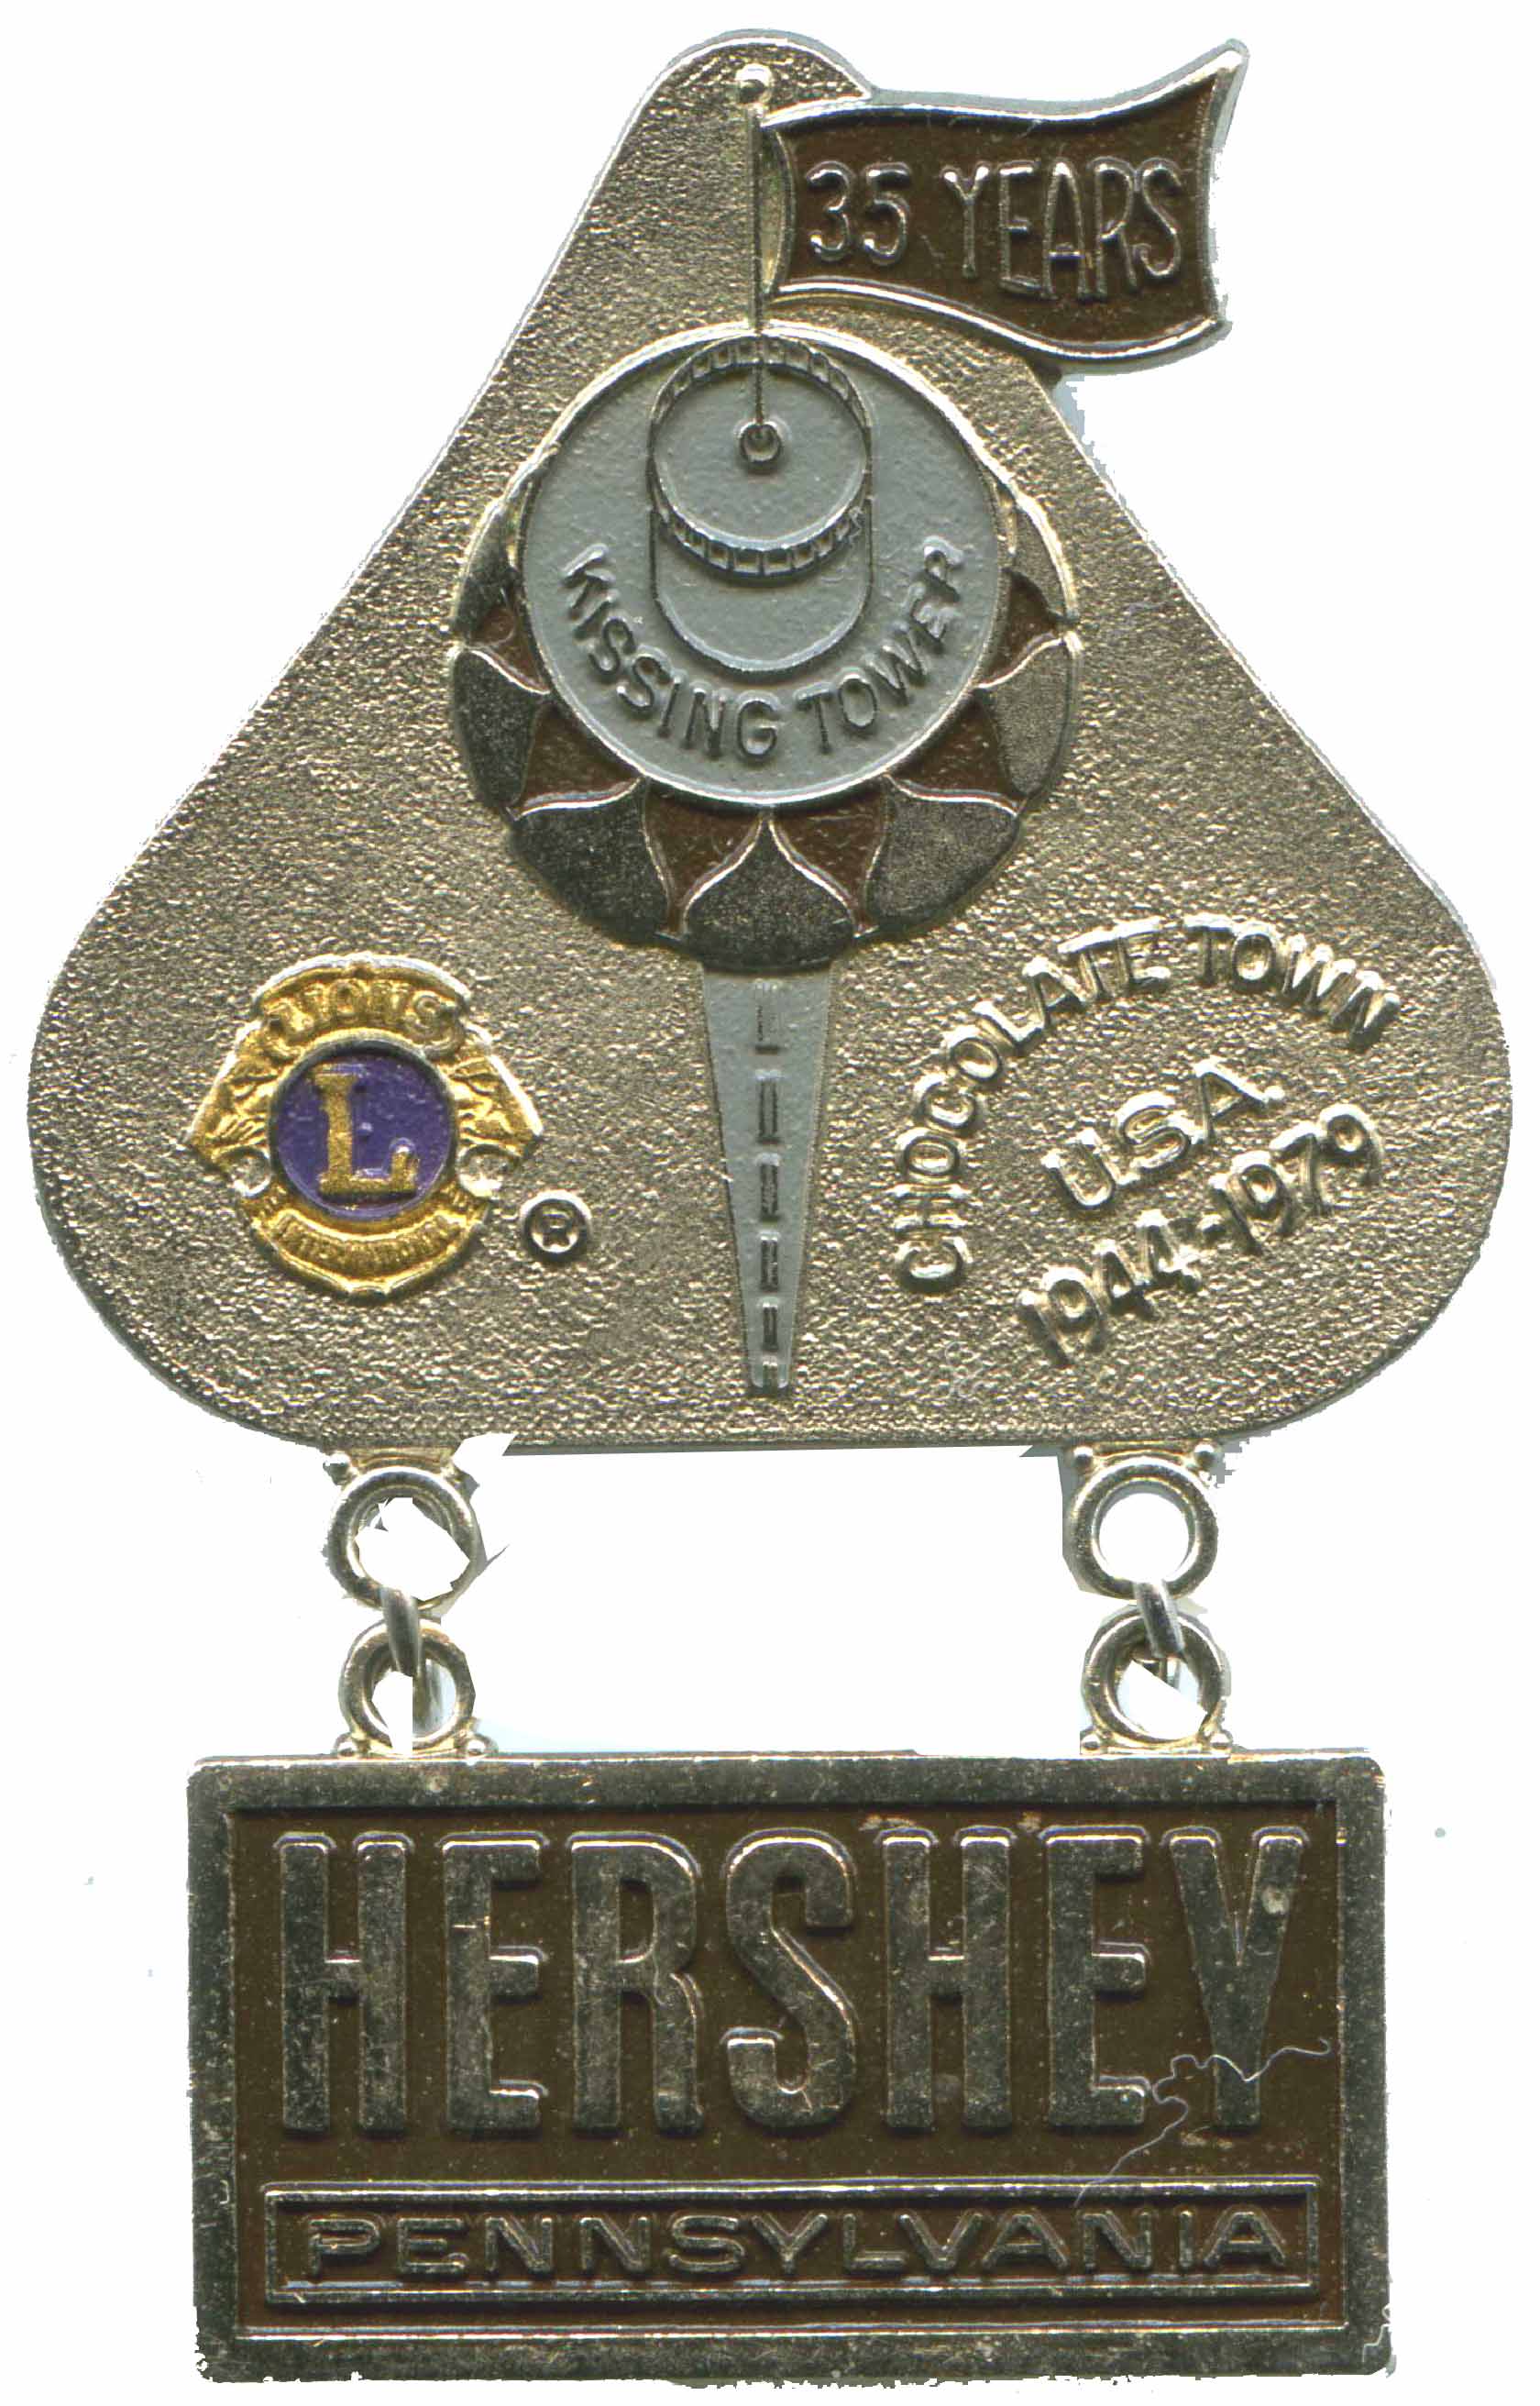 Hershey Pin 1979